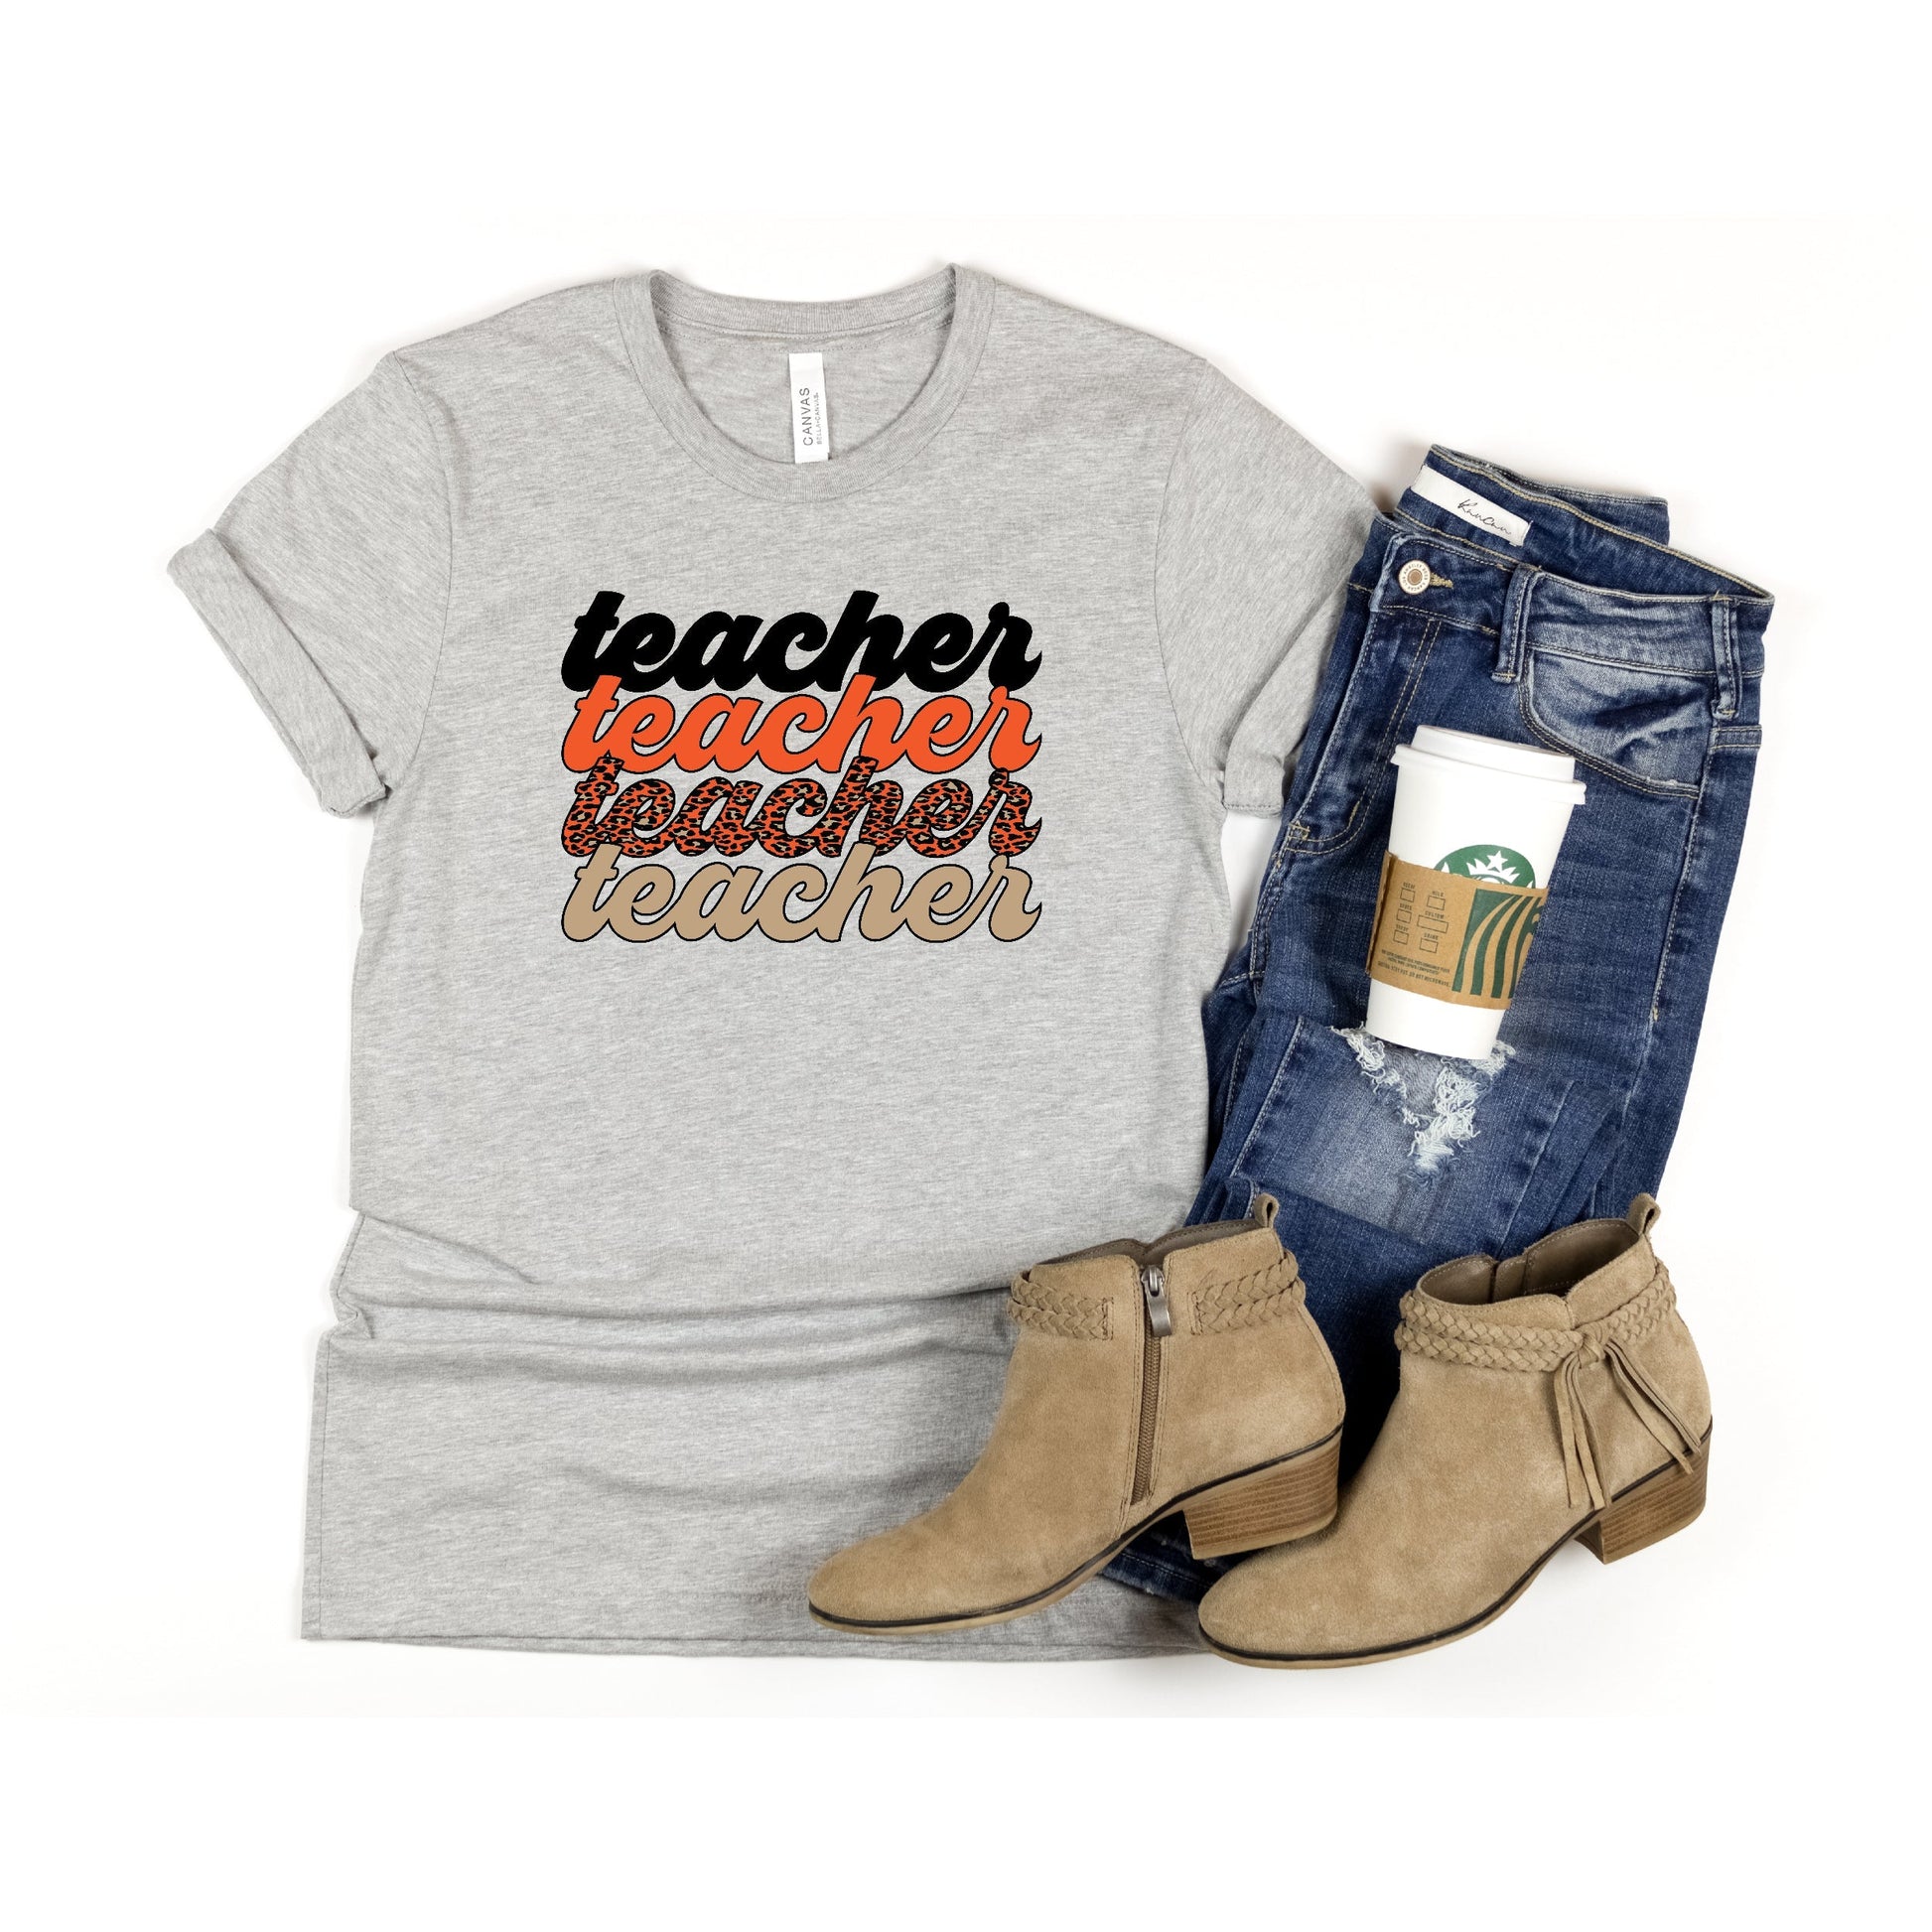 Halloween Teacher Shirt, Fall Teacher Shirt, Leopard Teacher Shirt, Trendy Teacher Tshirt, Cute Teacher Outfit, Teacher Gift, Spooky Teacher - Premium T-Shirt - Just $21.50! Shop now at Nine Thirty Nine Design